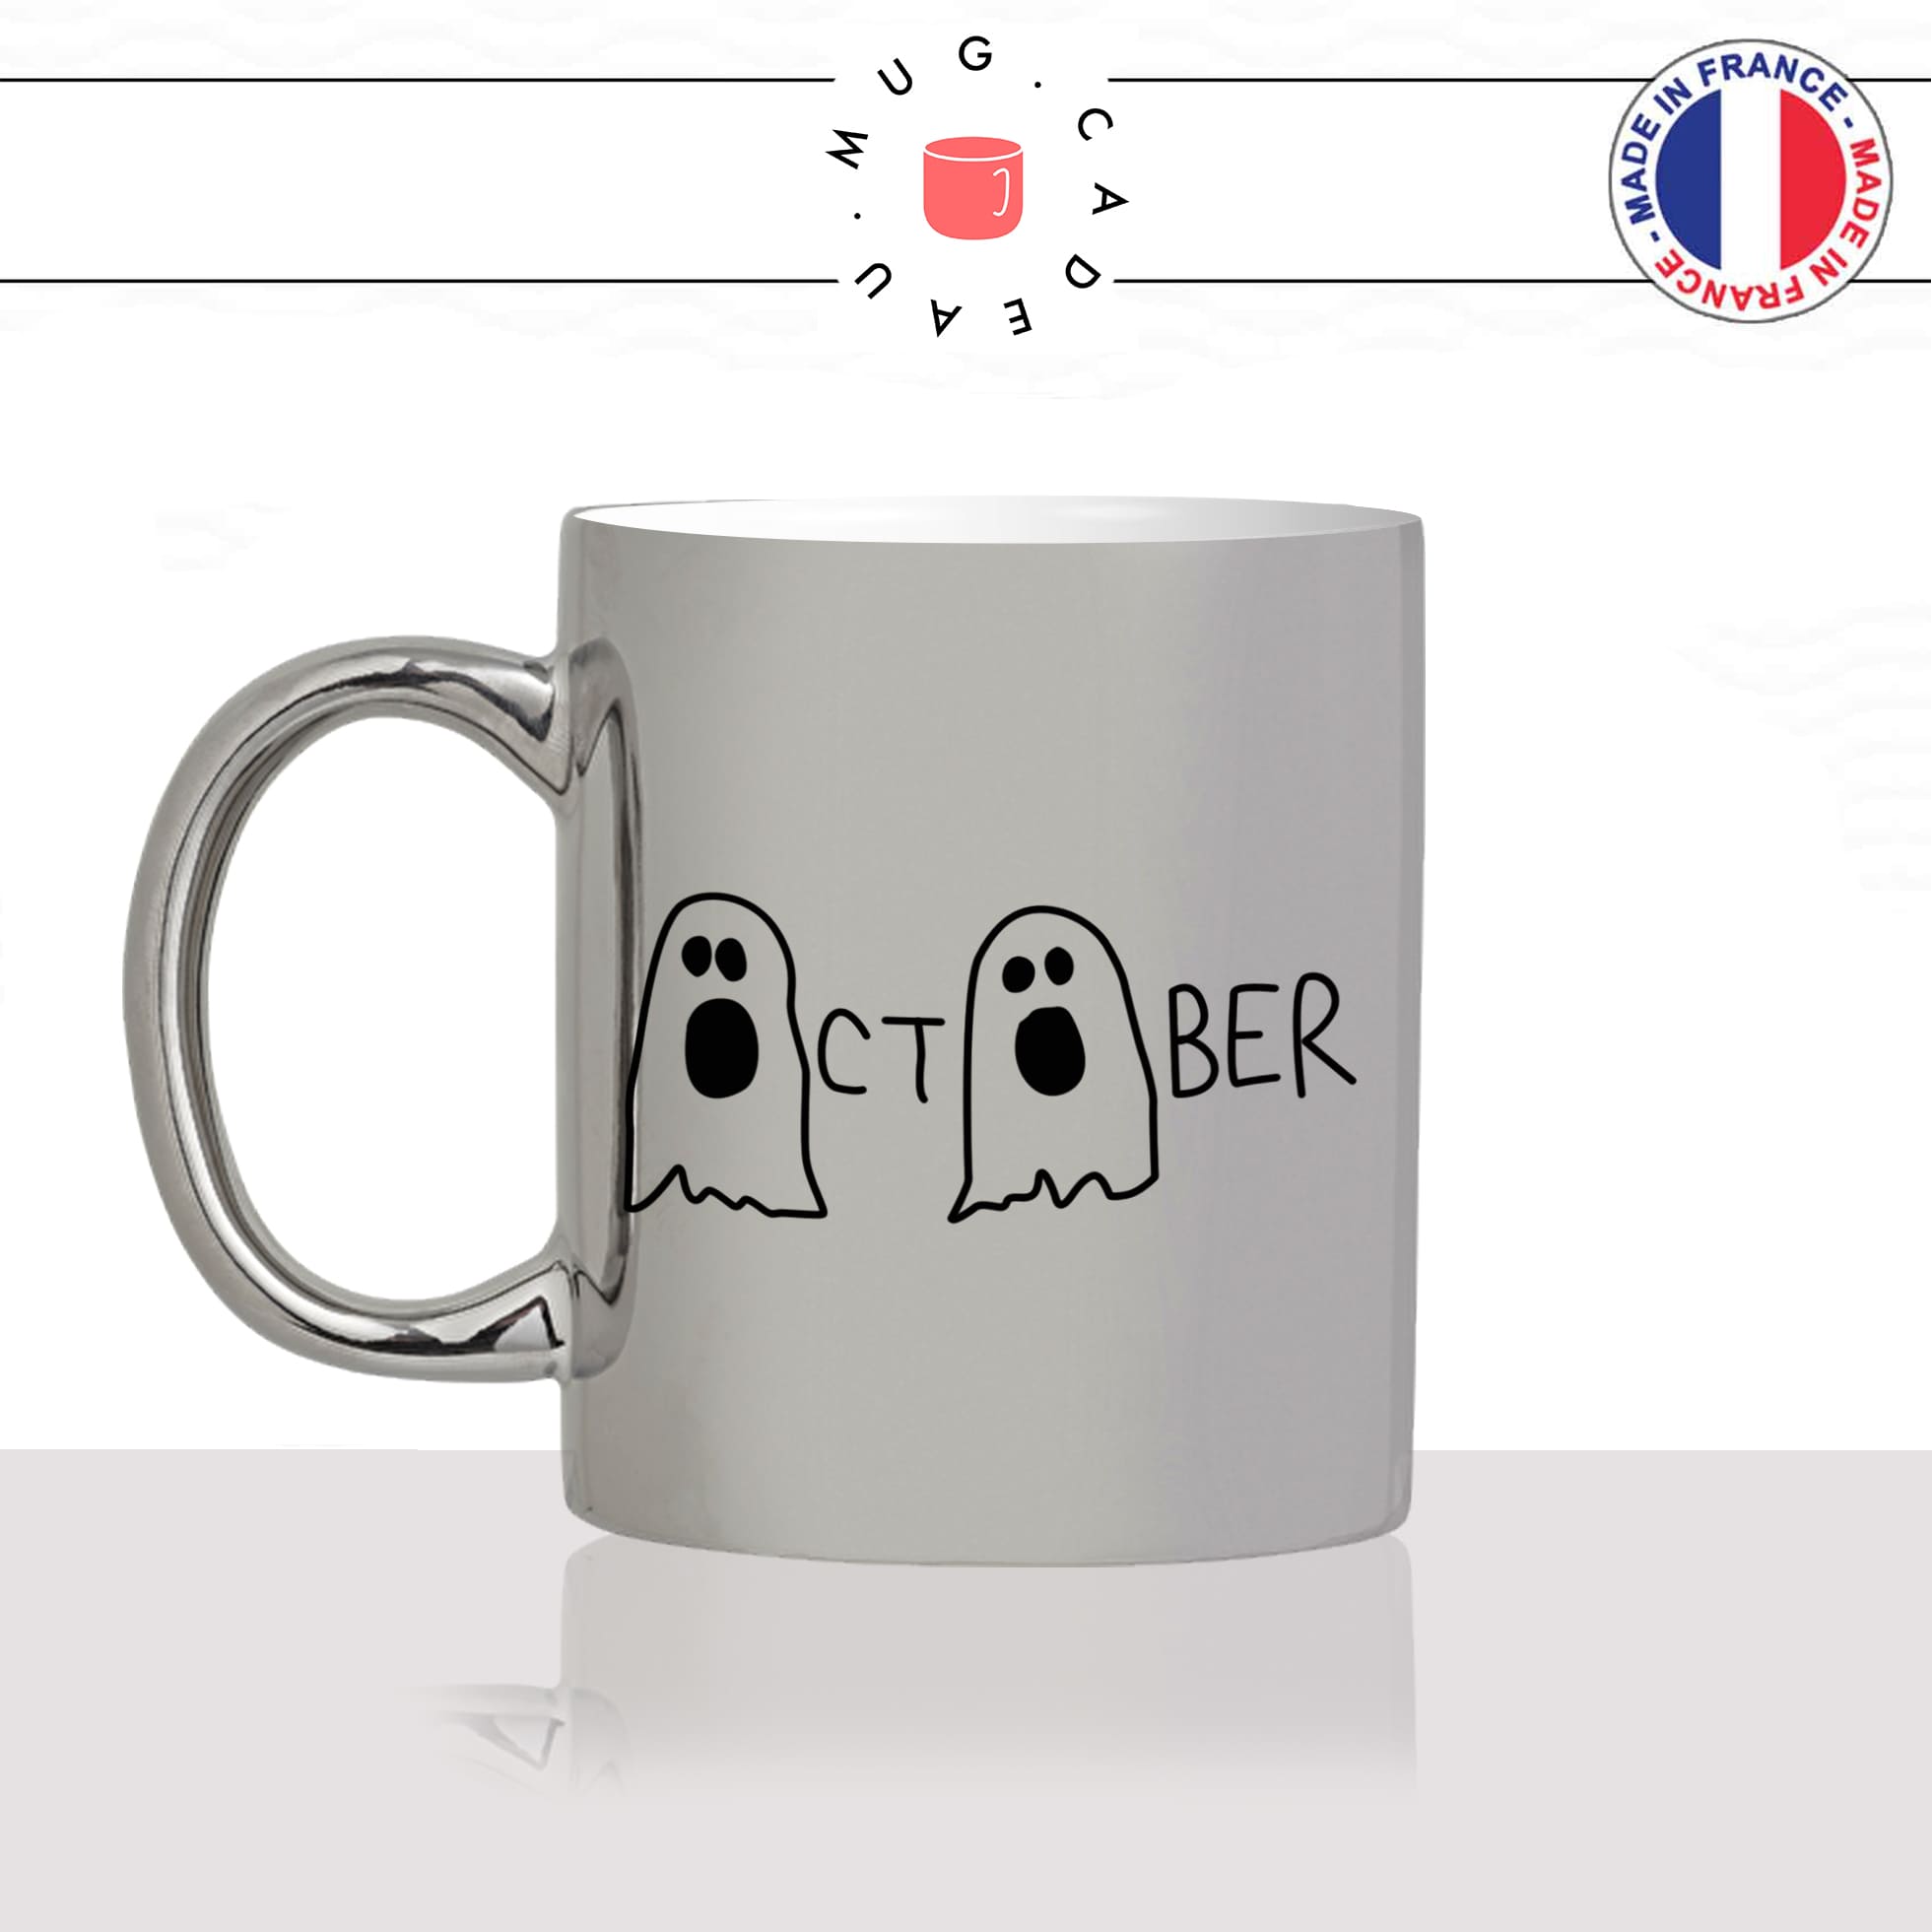 mug-tasse-argent-argenté-silver-octobre-october-automne-halloween-fantomes-humour-mignon-stylé-idée-cadeau-fun-cool-café-thé